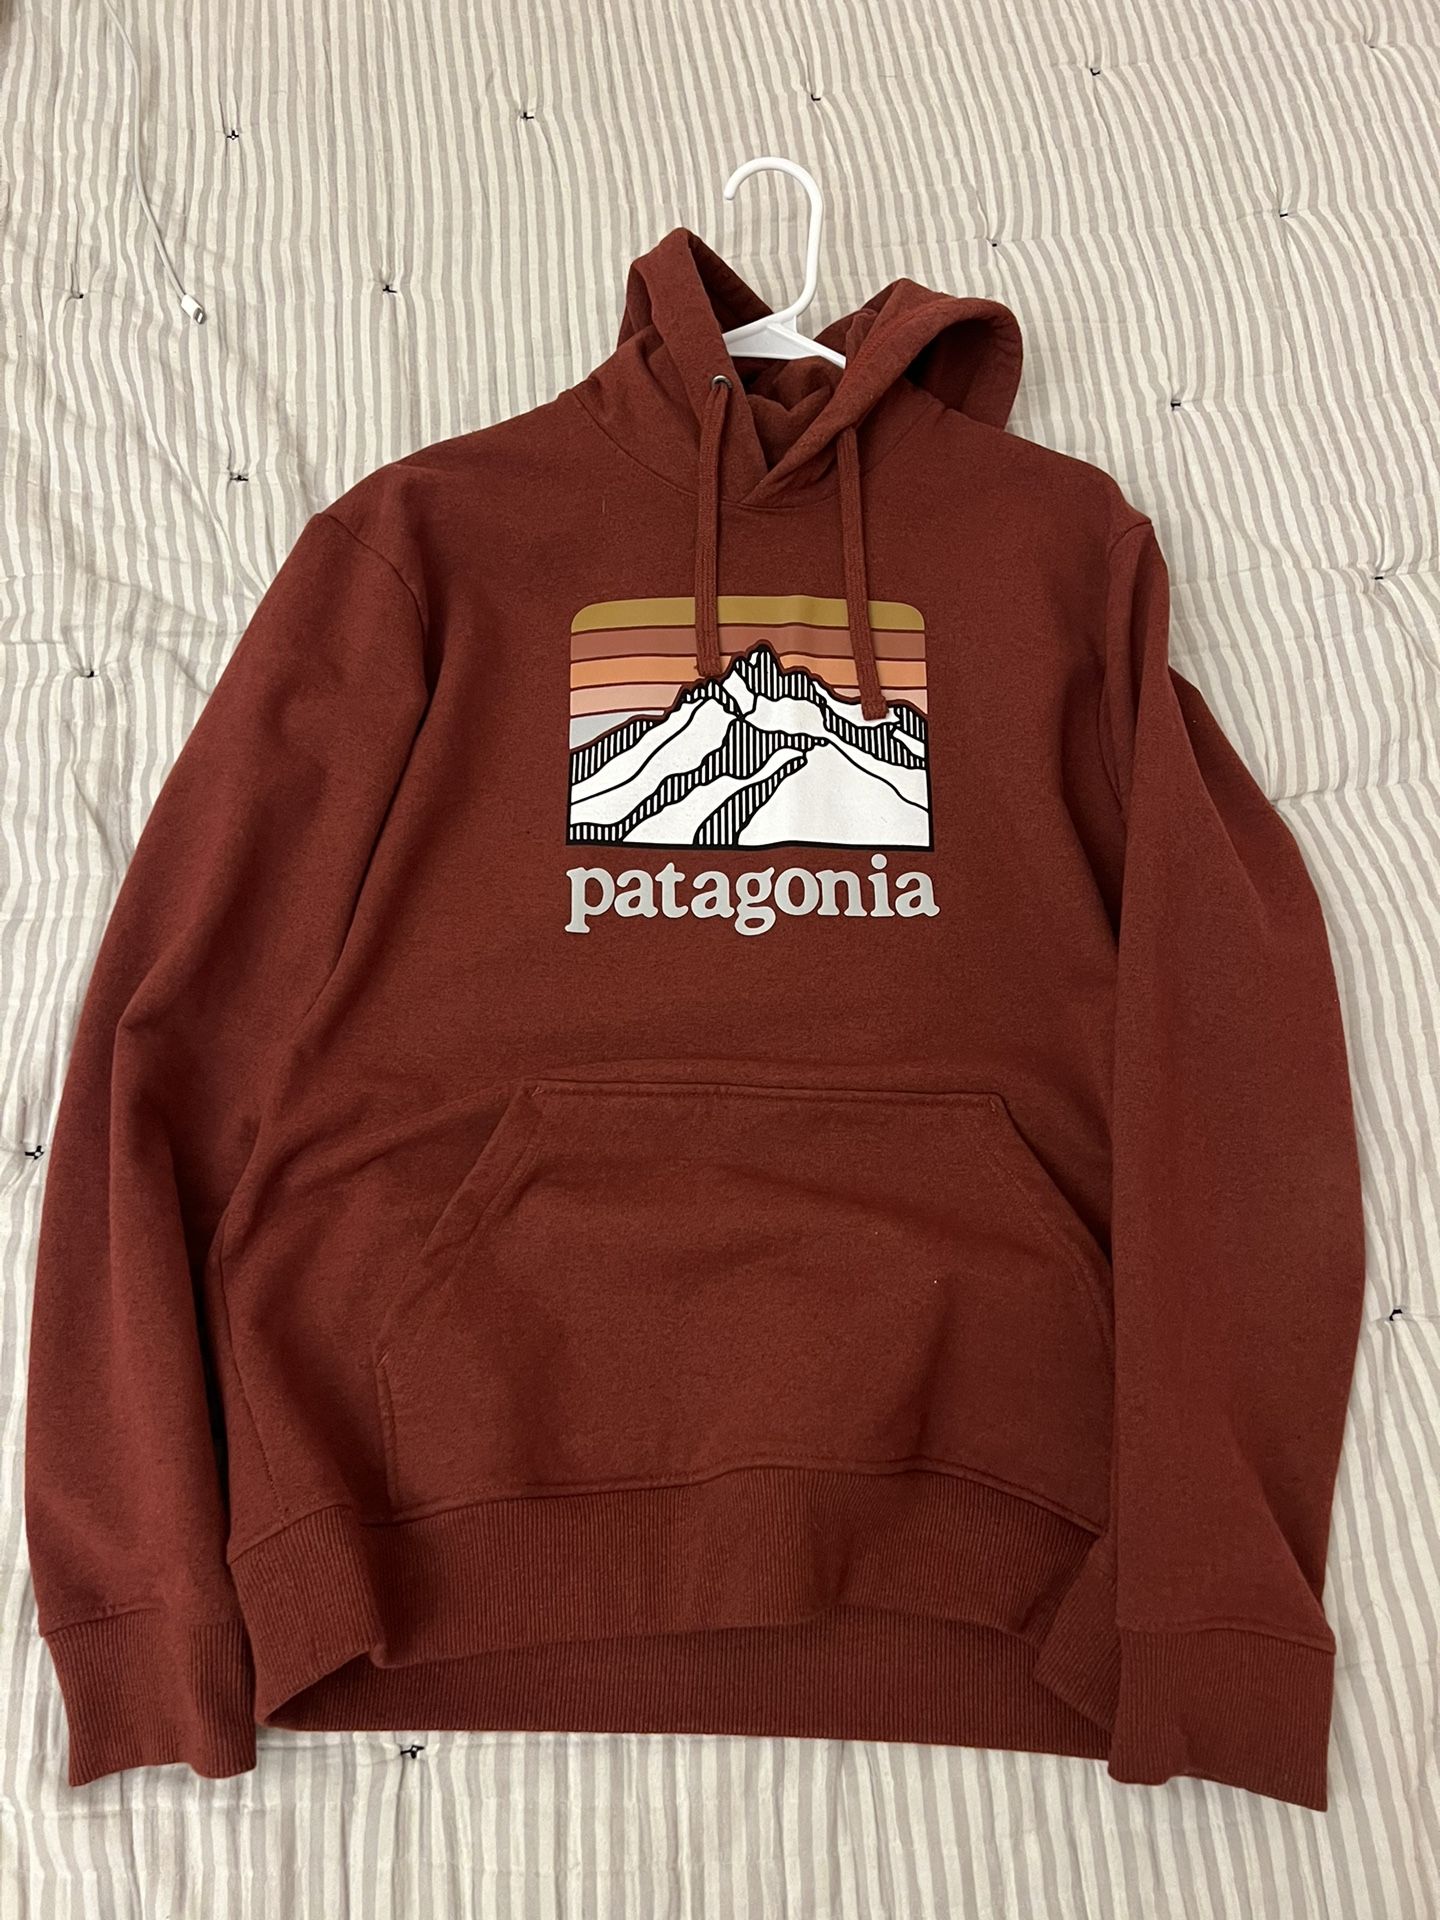 Patagonia Sweater (M)